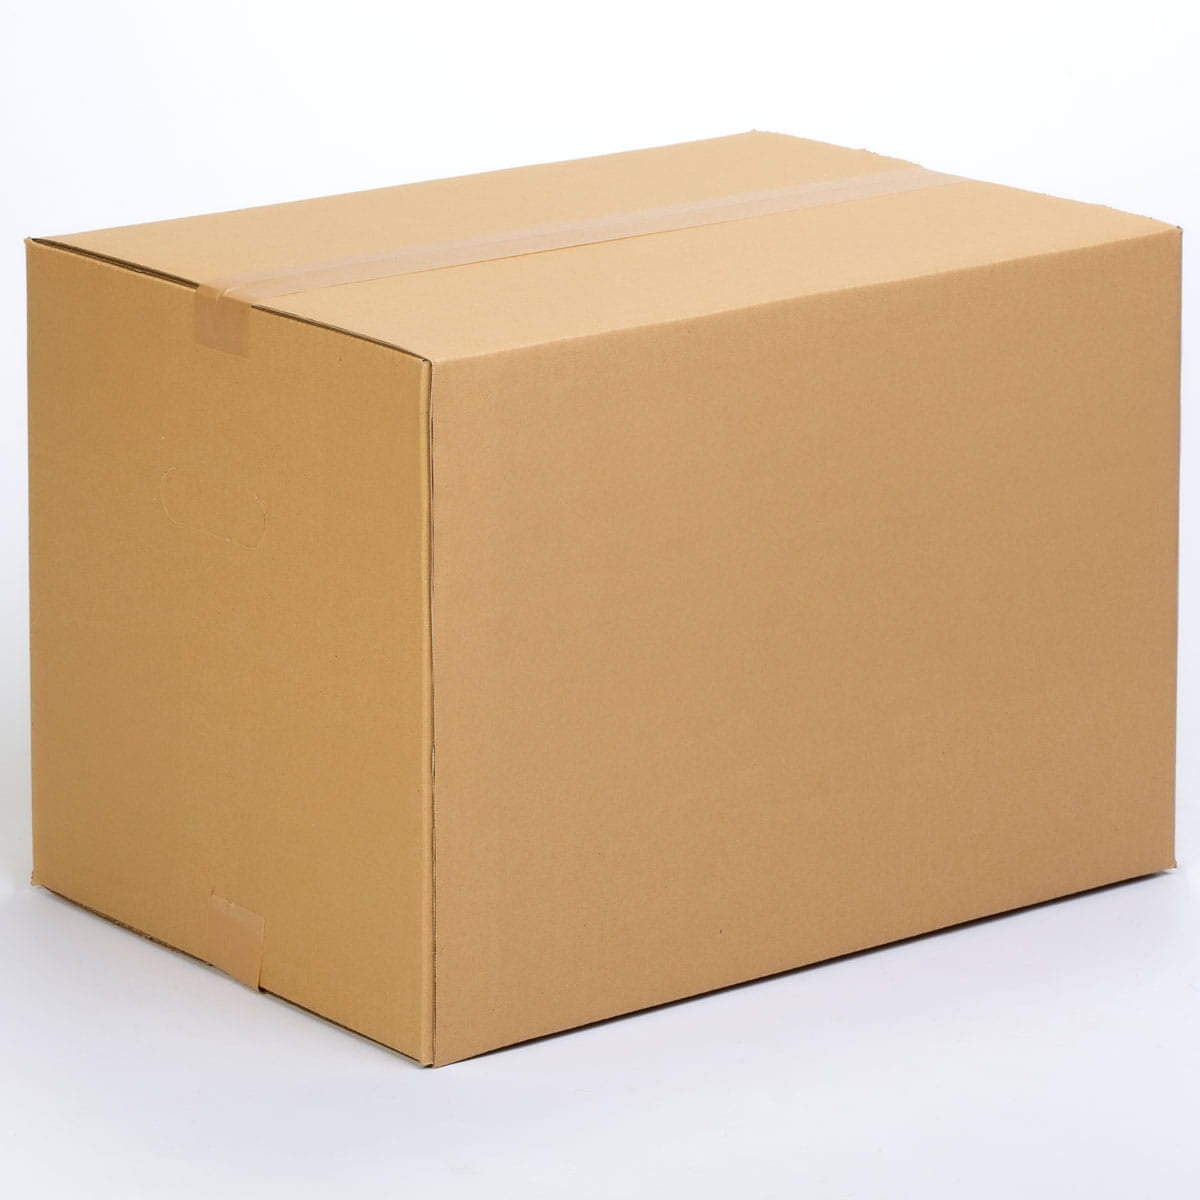 TELECAJAS | 50x35x35 cm | Caja Robusta de Cartón Mediana para Mudanza con Asas - Ideal Disco Vinilo | Pack de 10 cajas